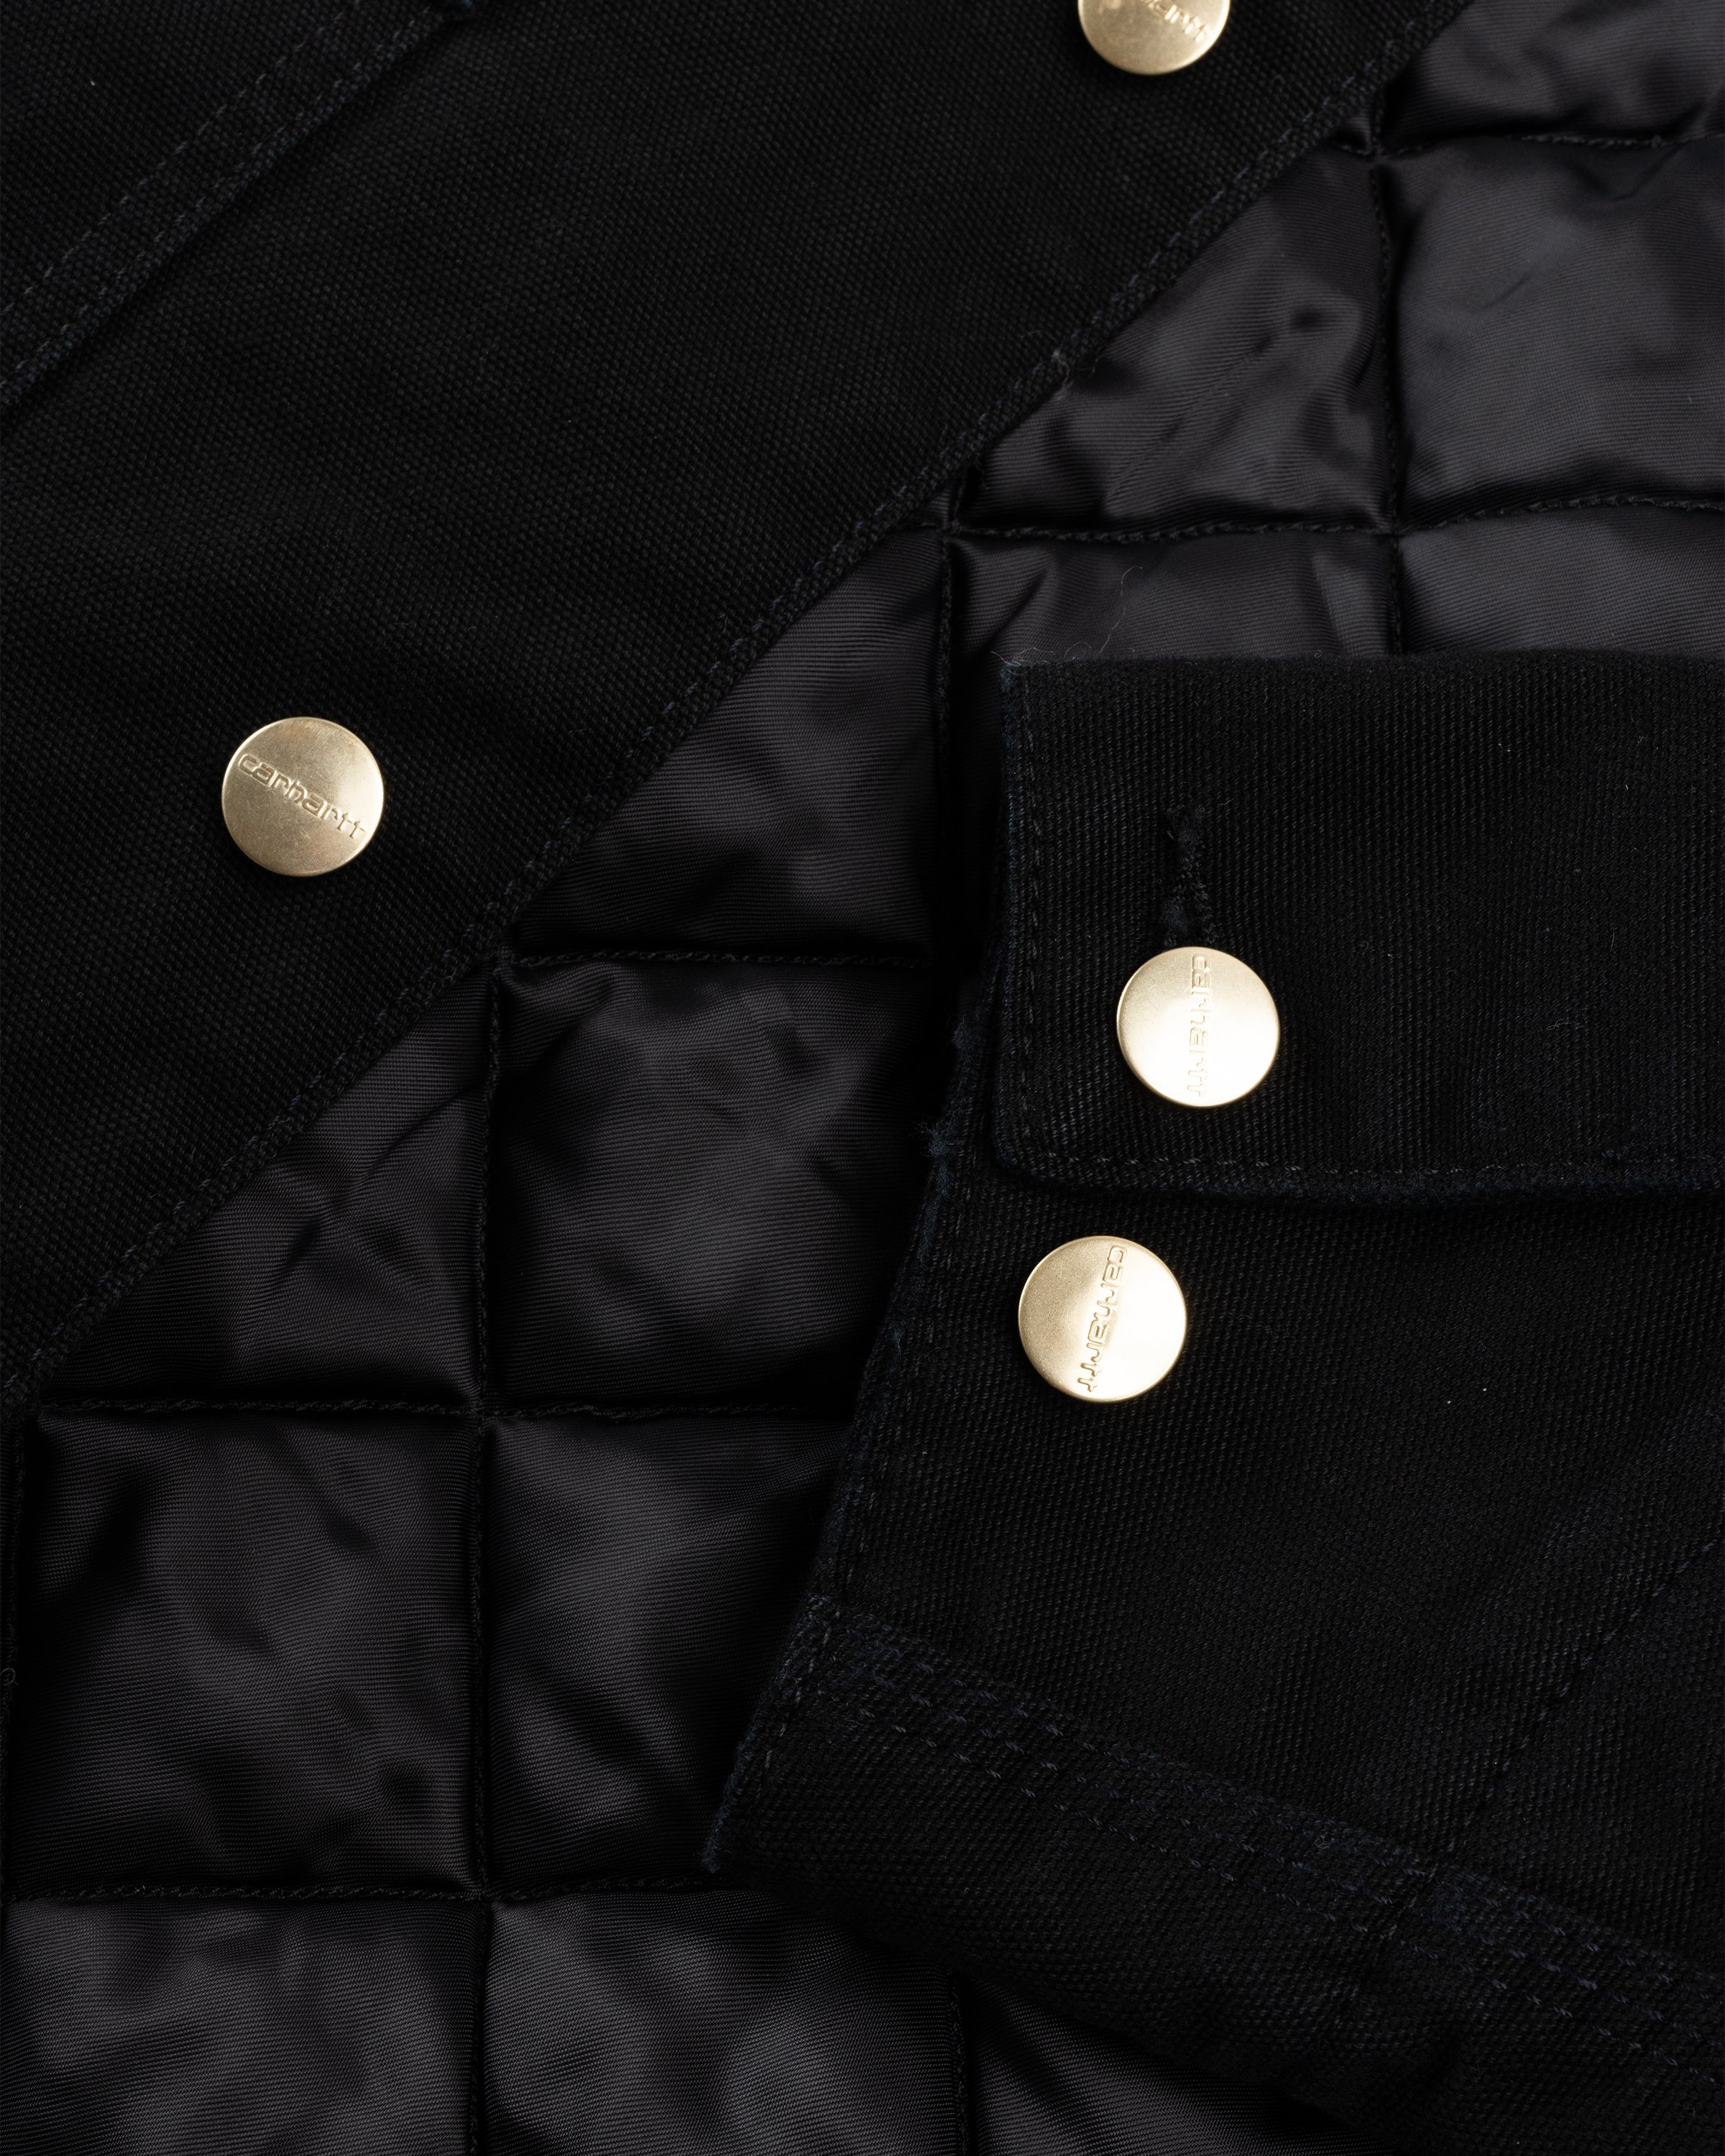 Carhartt WIP - OG Chore Coat Black/Aged Canvas - Clothing - Black - Image 6